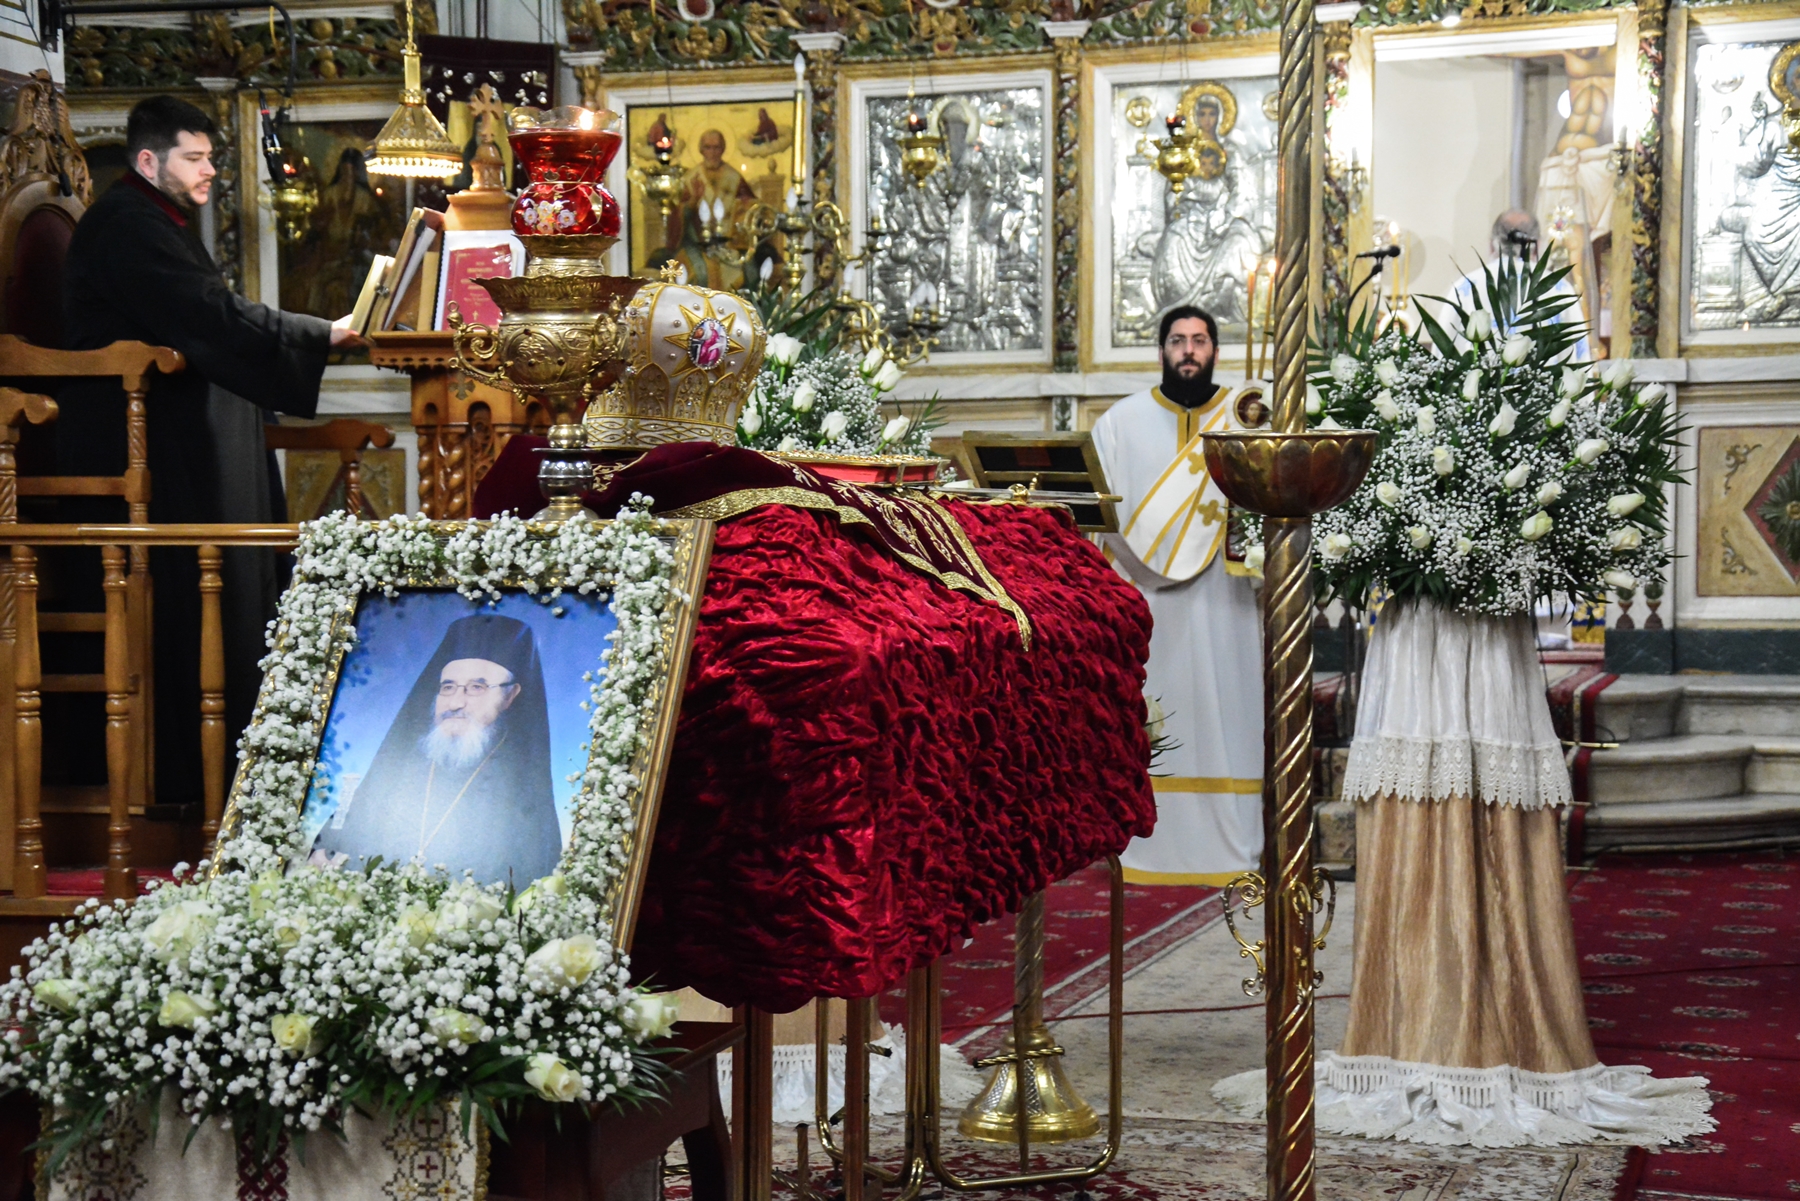 Μητροπολίτης Αιτωλίας και Ακαρνανίας Κοσμάς – κηδεία: Σε κλίμα οδύνης το τελευταίο αντίο, πλήθος κόσμου στην εξόδιο ακολουθία